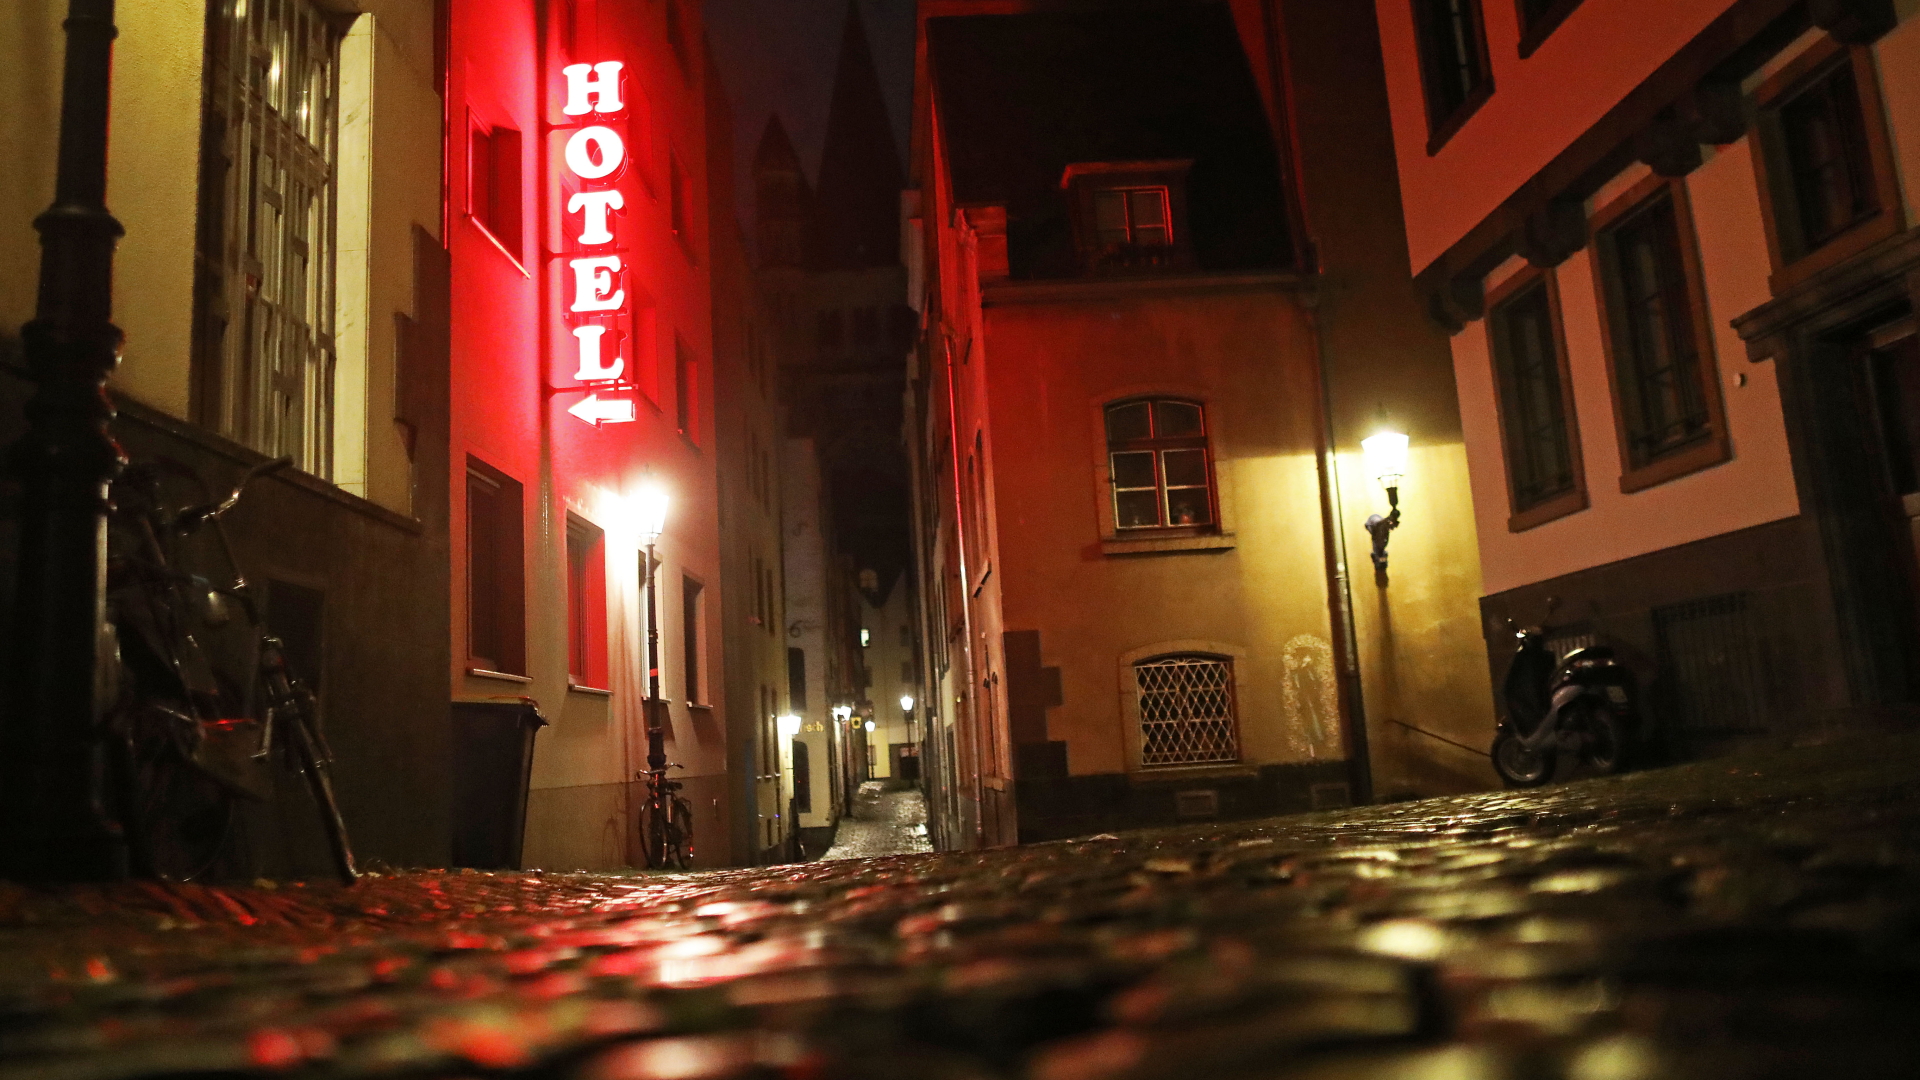 Leuchtreklame eines Hotels in Köln | Bildquelle: dpa